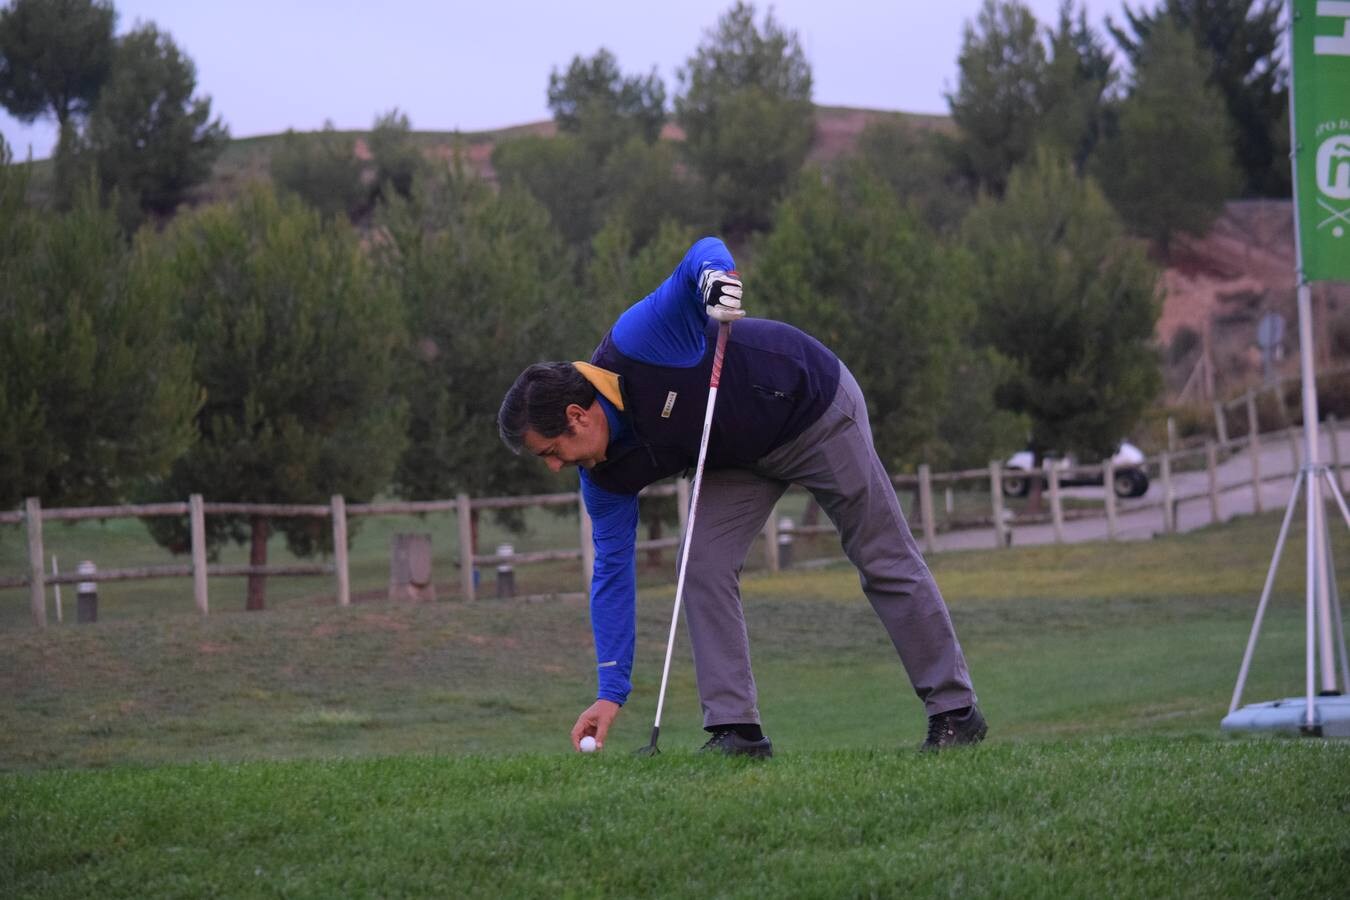 Los jugadores disfrutaron de una gran jornada de golf.